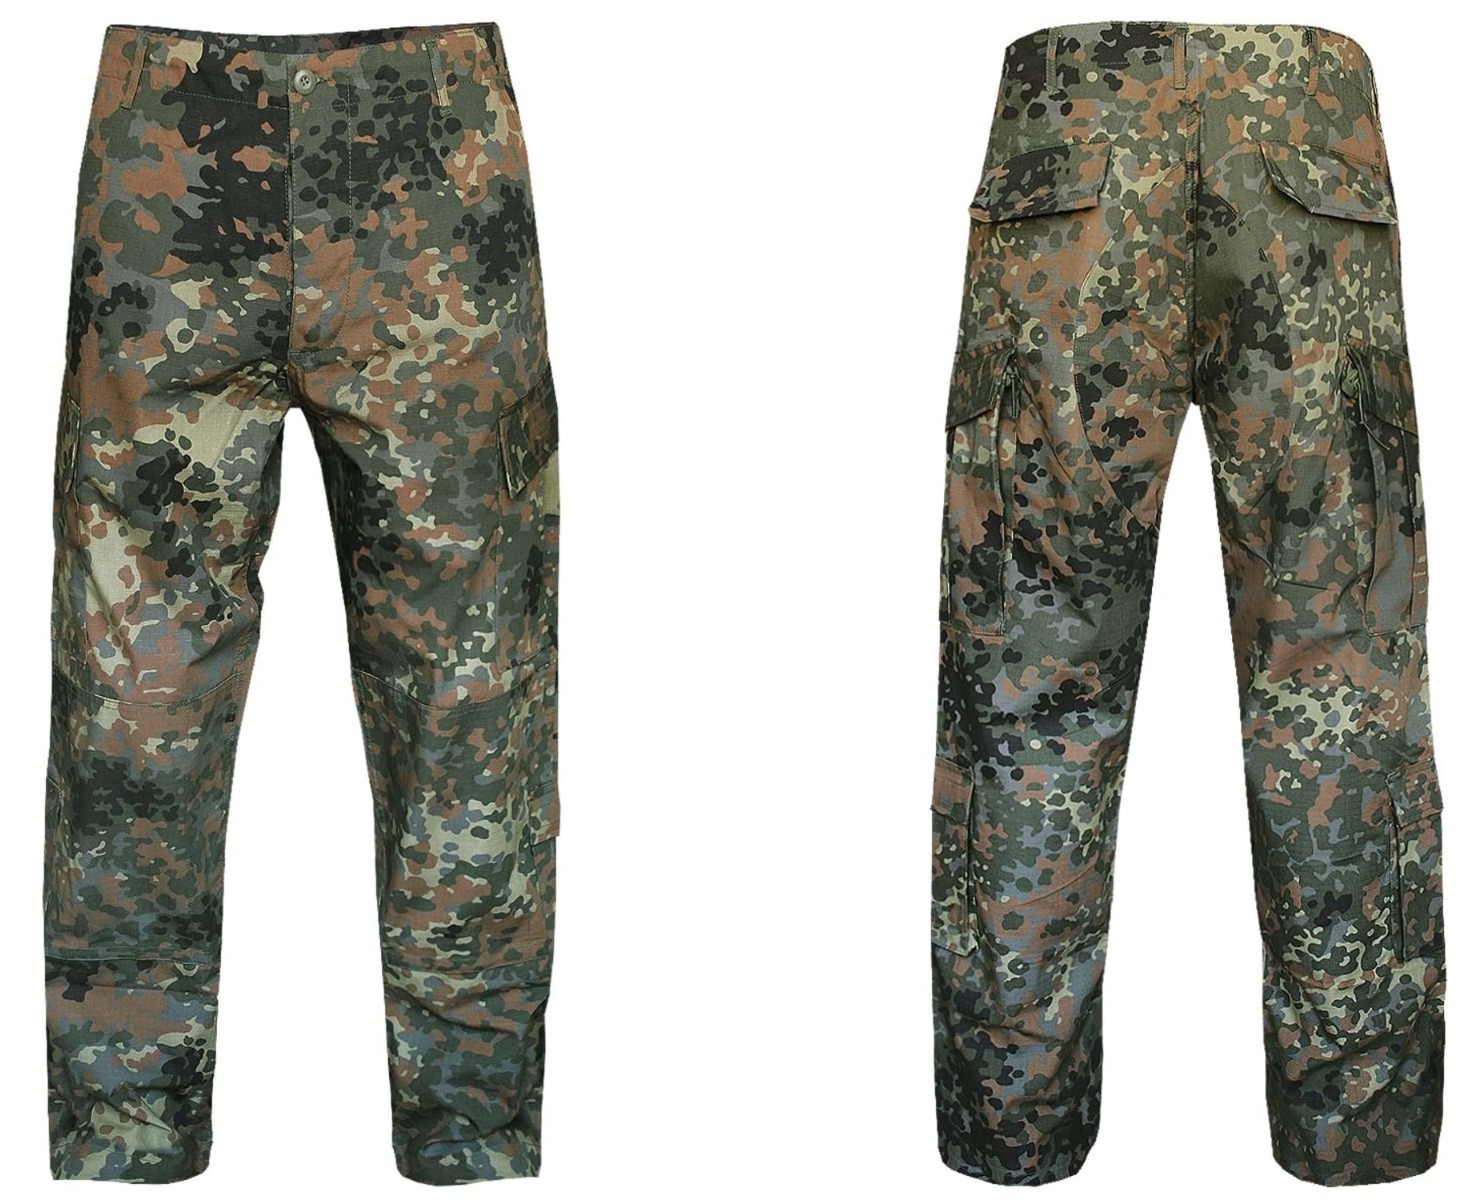 Pridobite svoj par US vojaških hlač ACU Flecktarn maskirni vzorec - vrhunske taktične hlače za udobje, vzdržljivost in funkcionalnost. Primerno za vojaške operacije, pohodništvo, lov in varnostne sile. Opremite se s kakovostnim vojaškim oblačilom!